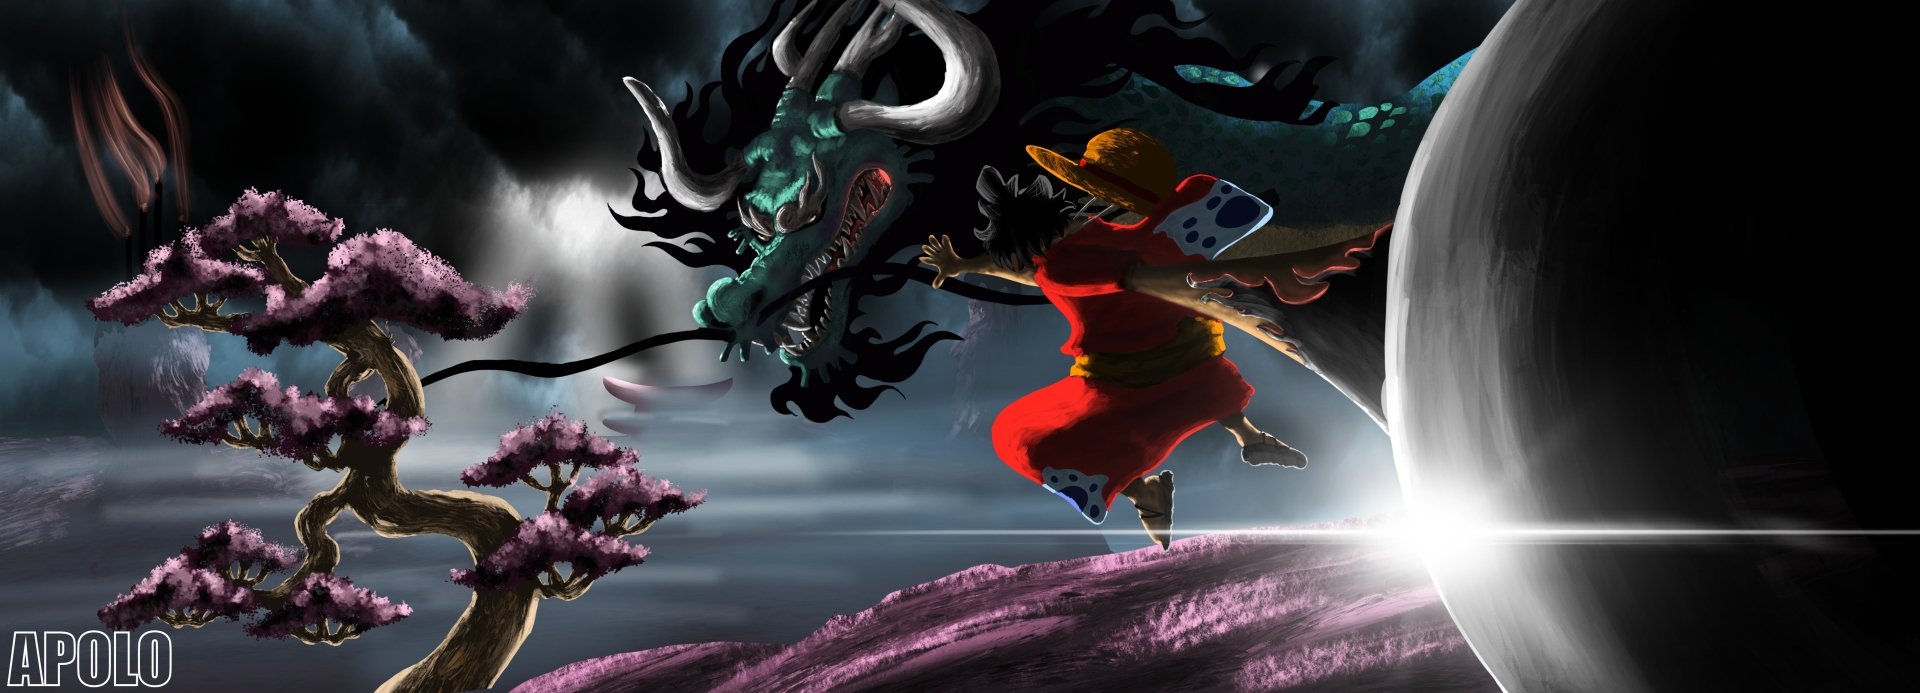 Luffy vs Kaido Dragon là bức tranh vô cùng ấn tượng, mô tả một phiên bản kịch tính của cuộc đối đầu giữa Luffy và Kaido. Với hoạ sĩ Apolo tài năng, tranh vẽ tỏa sáng với màu sắc chói lọi, đầy sức sống. Hãy đưa mắt vào tranh, cảm nhận tinh thần chiến đấu mạnh mẽ của các nhân vật One Piece.